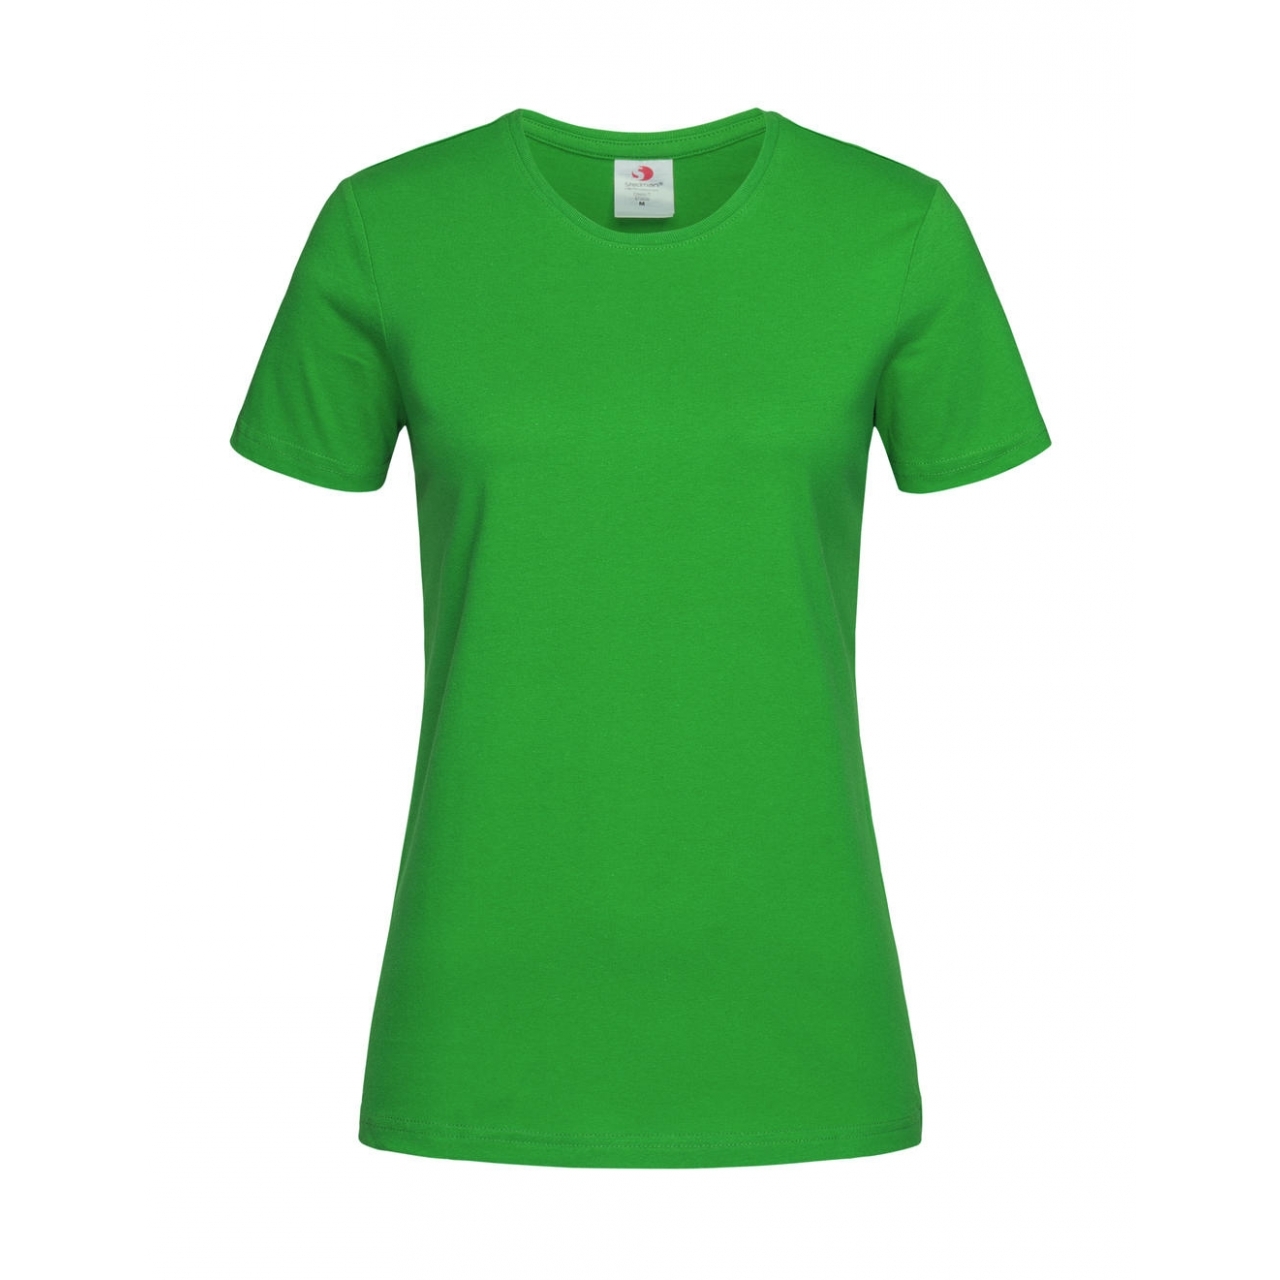 Tričko dámské Stedman Fitted s kulatým výstřihem - zelené, M